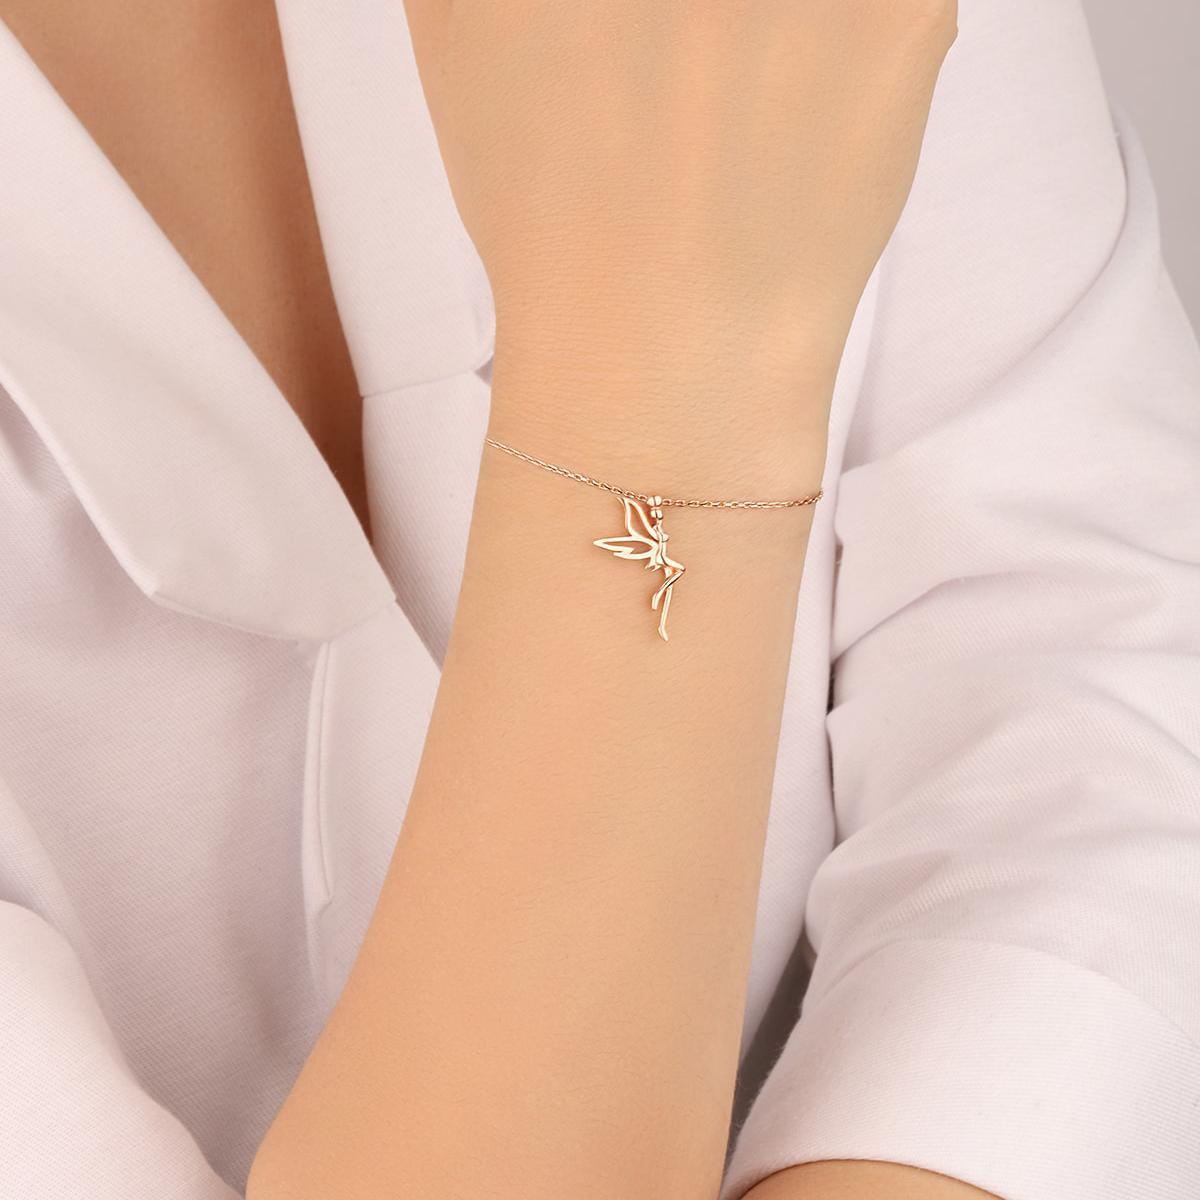 Fairy Godmother Bracelet • Tinkerbell Bracelet Charm • Gift For Her - Trending Silver Gifts